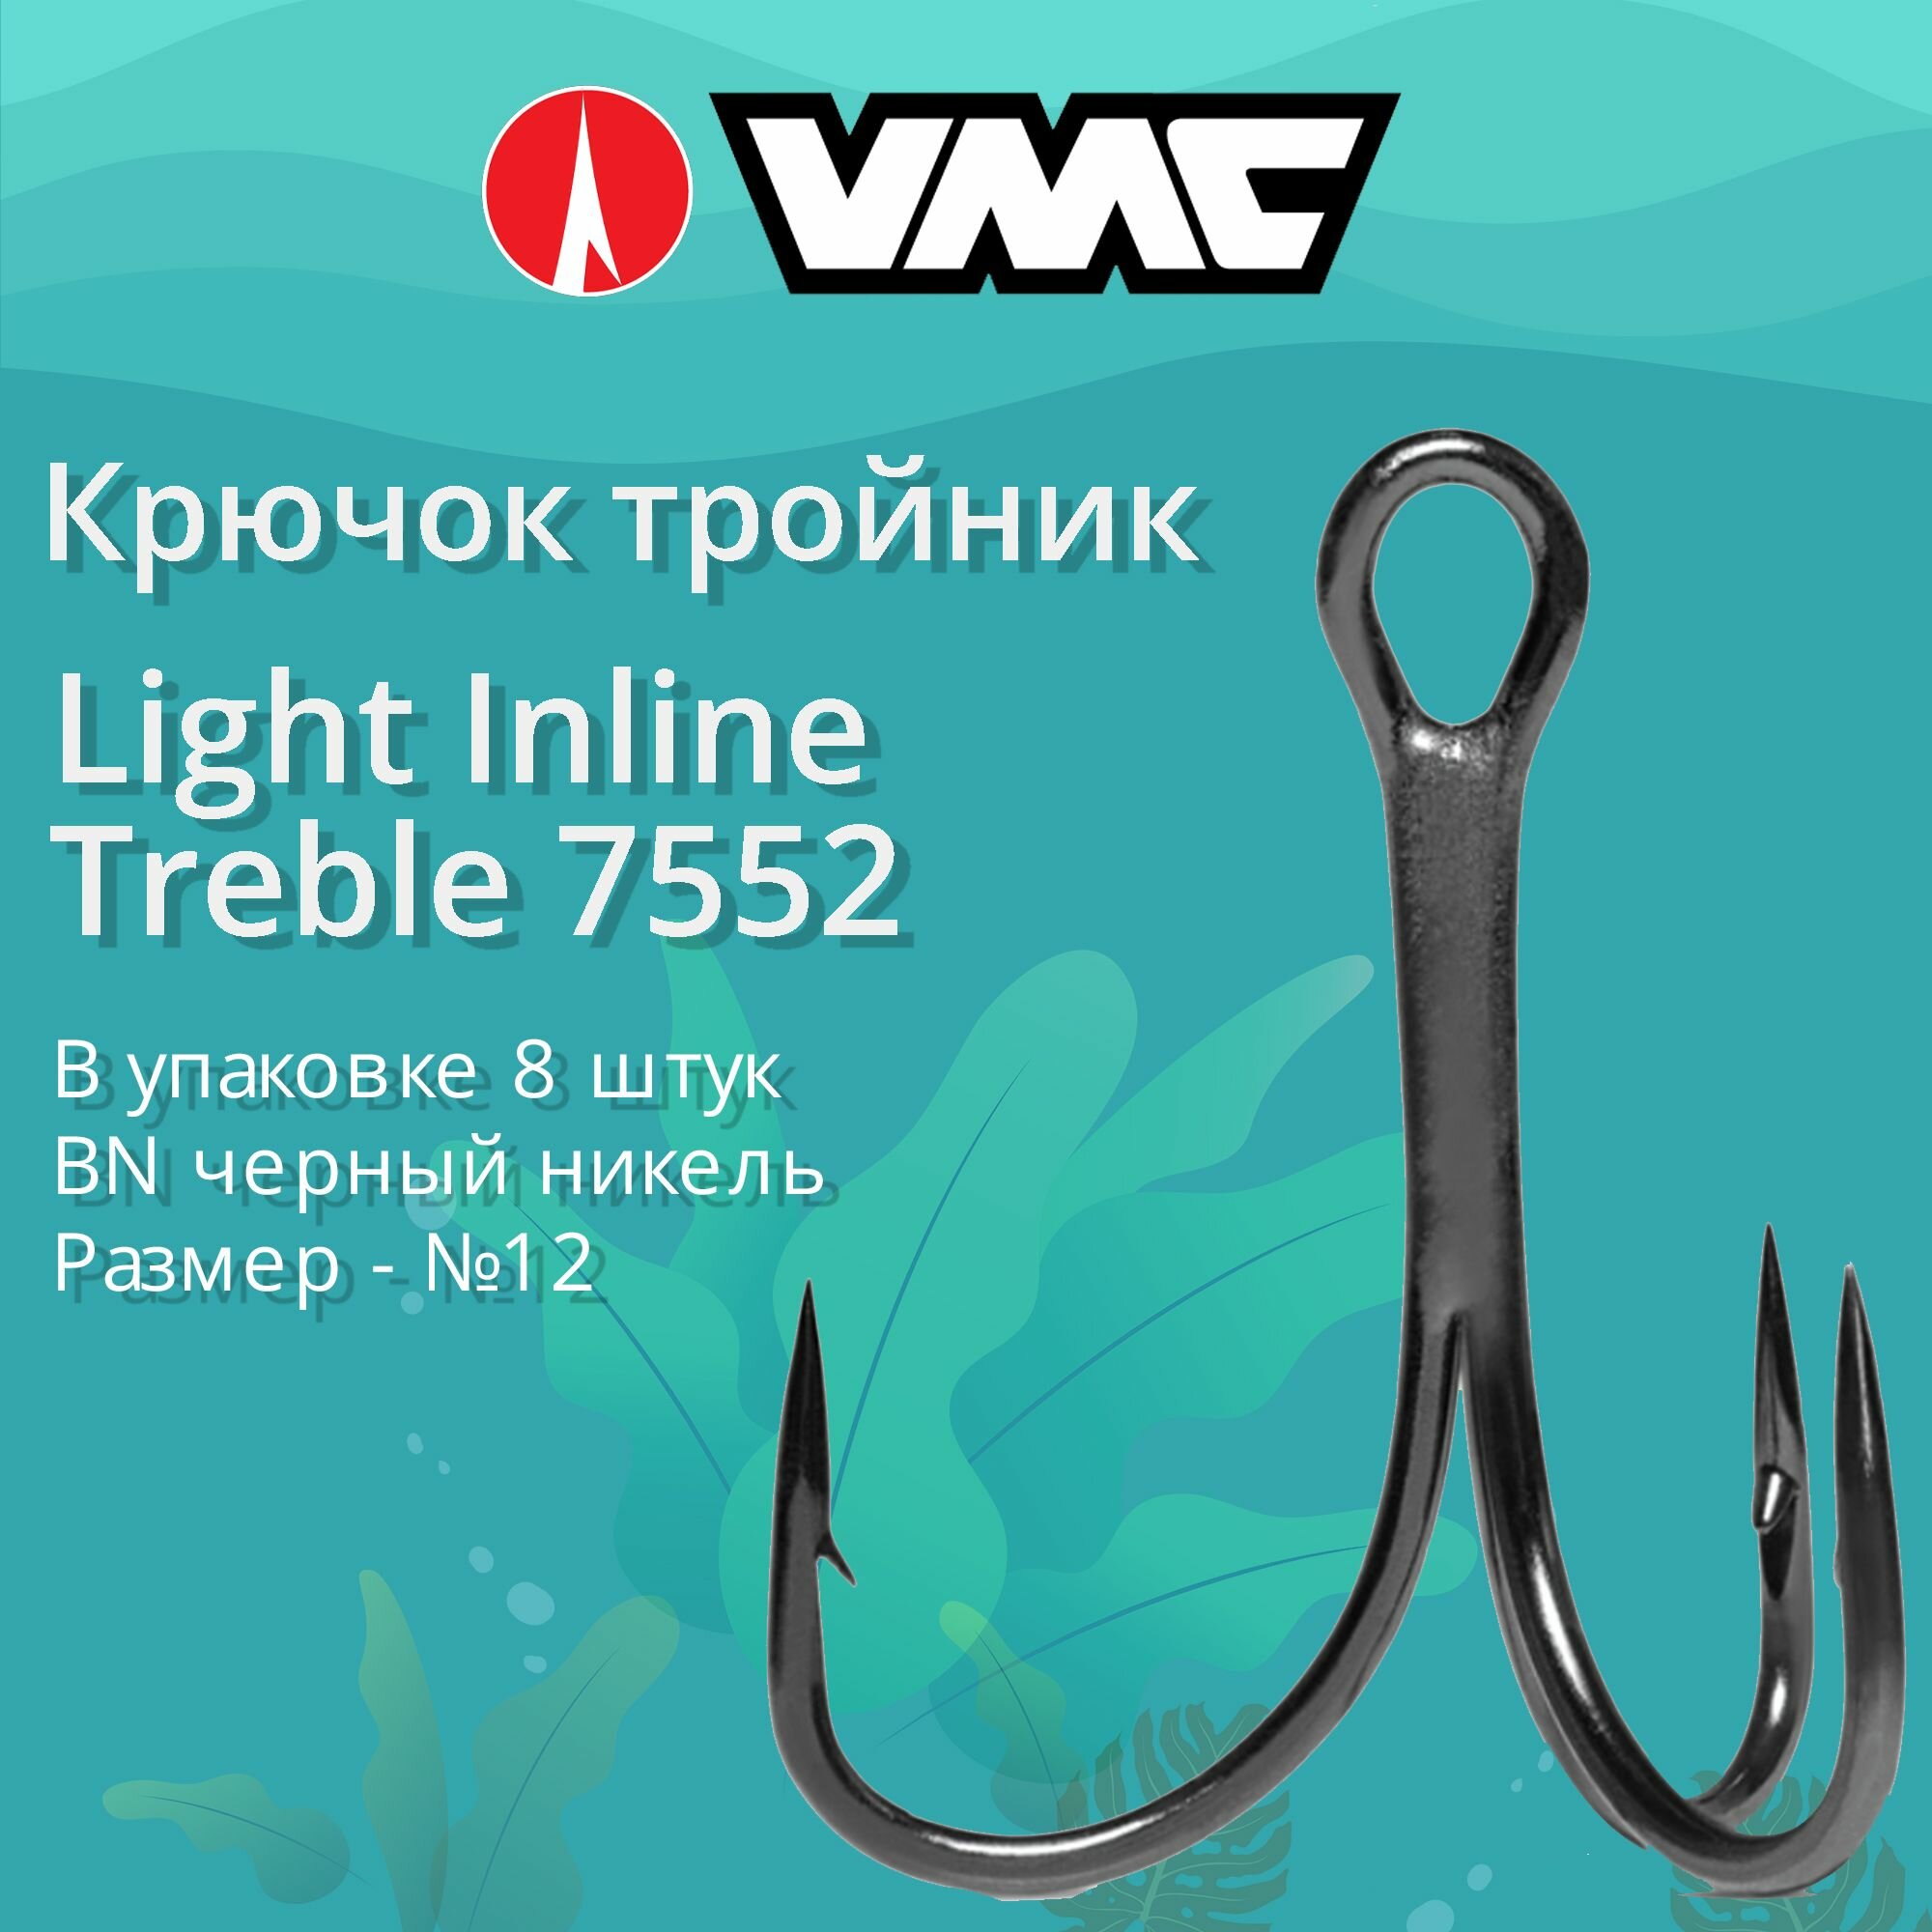 Крючки для рыбалки (тройник) VMC Light Inline Treble 7552 BN (черн. никель) №12 (упаковка 8 штук)